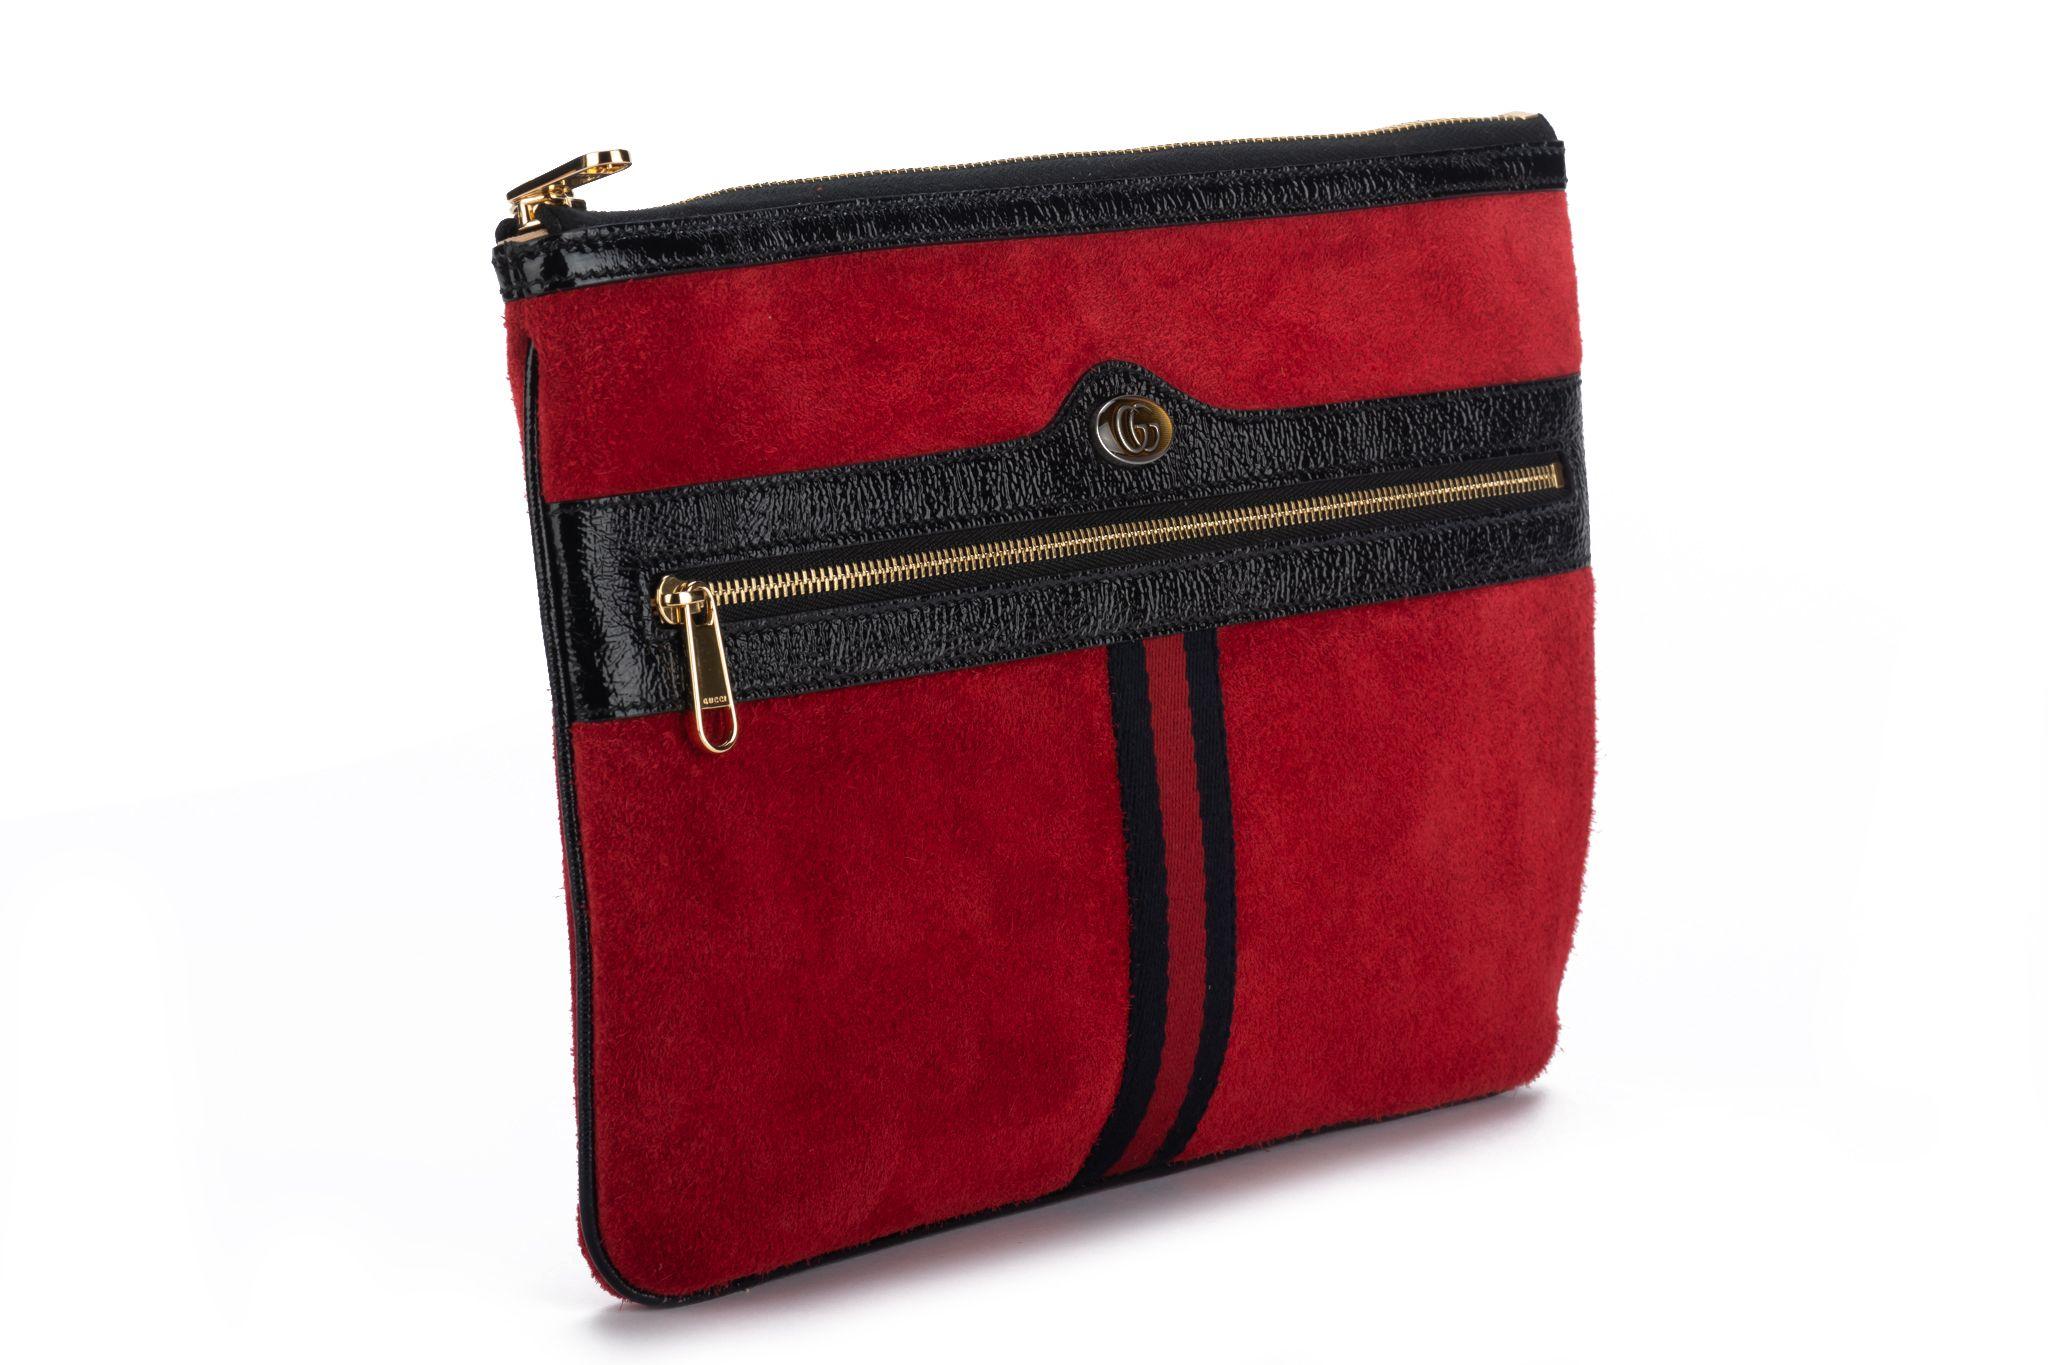 Gucci brandneue Clutch aus rotem Wildleder und schwarzem Lackleder mit goldener Hardware. Äußere Reißverschlusstasche und Reißverschluss oben. Kommt mit originalem Schutzumschlag.